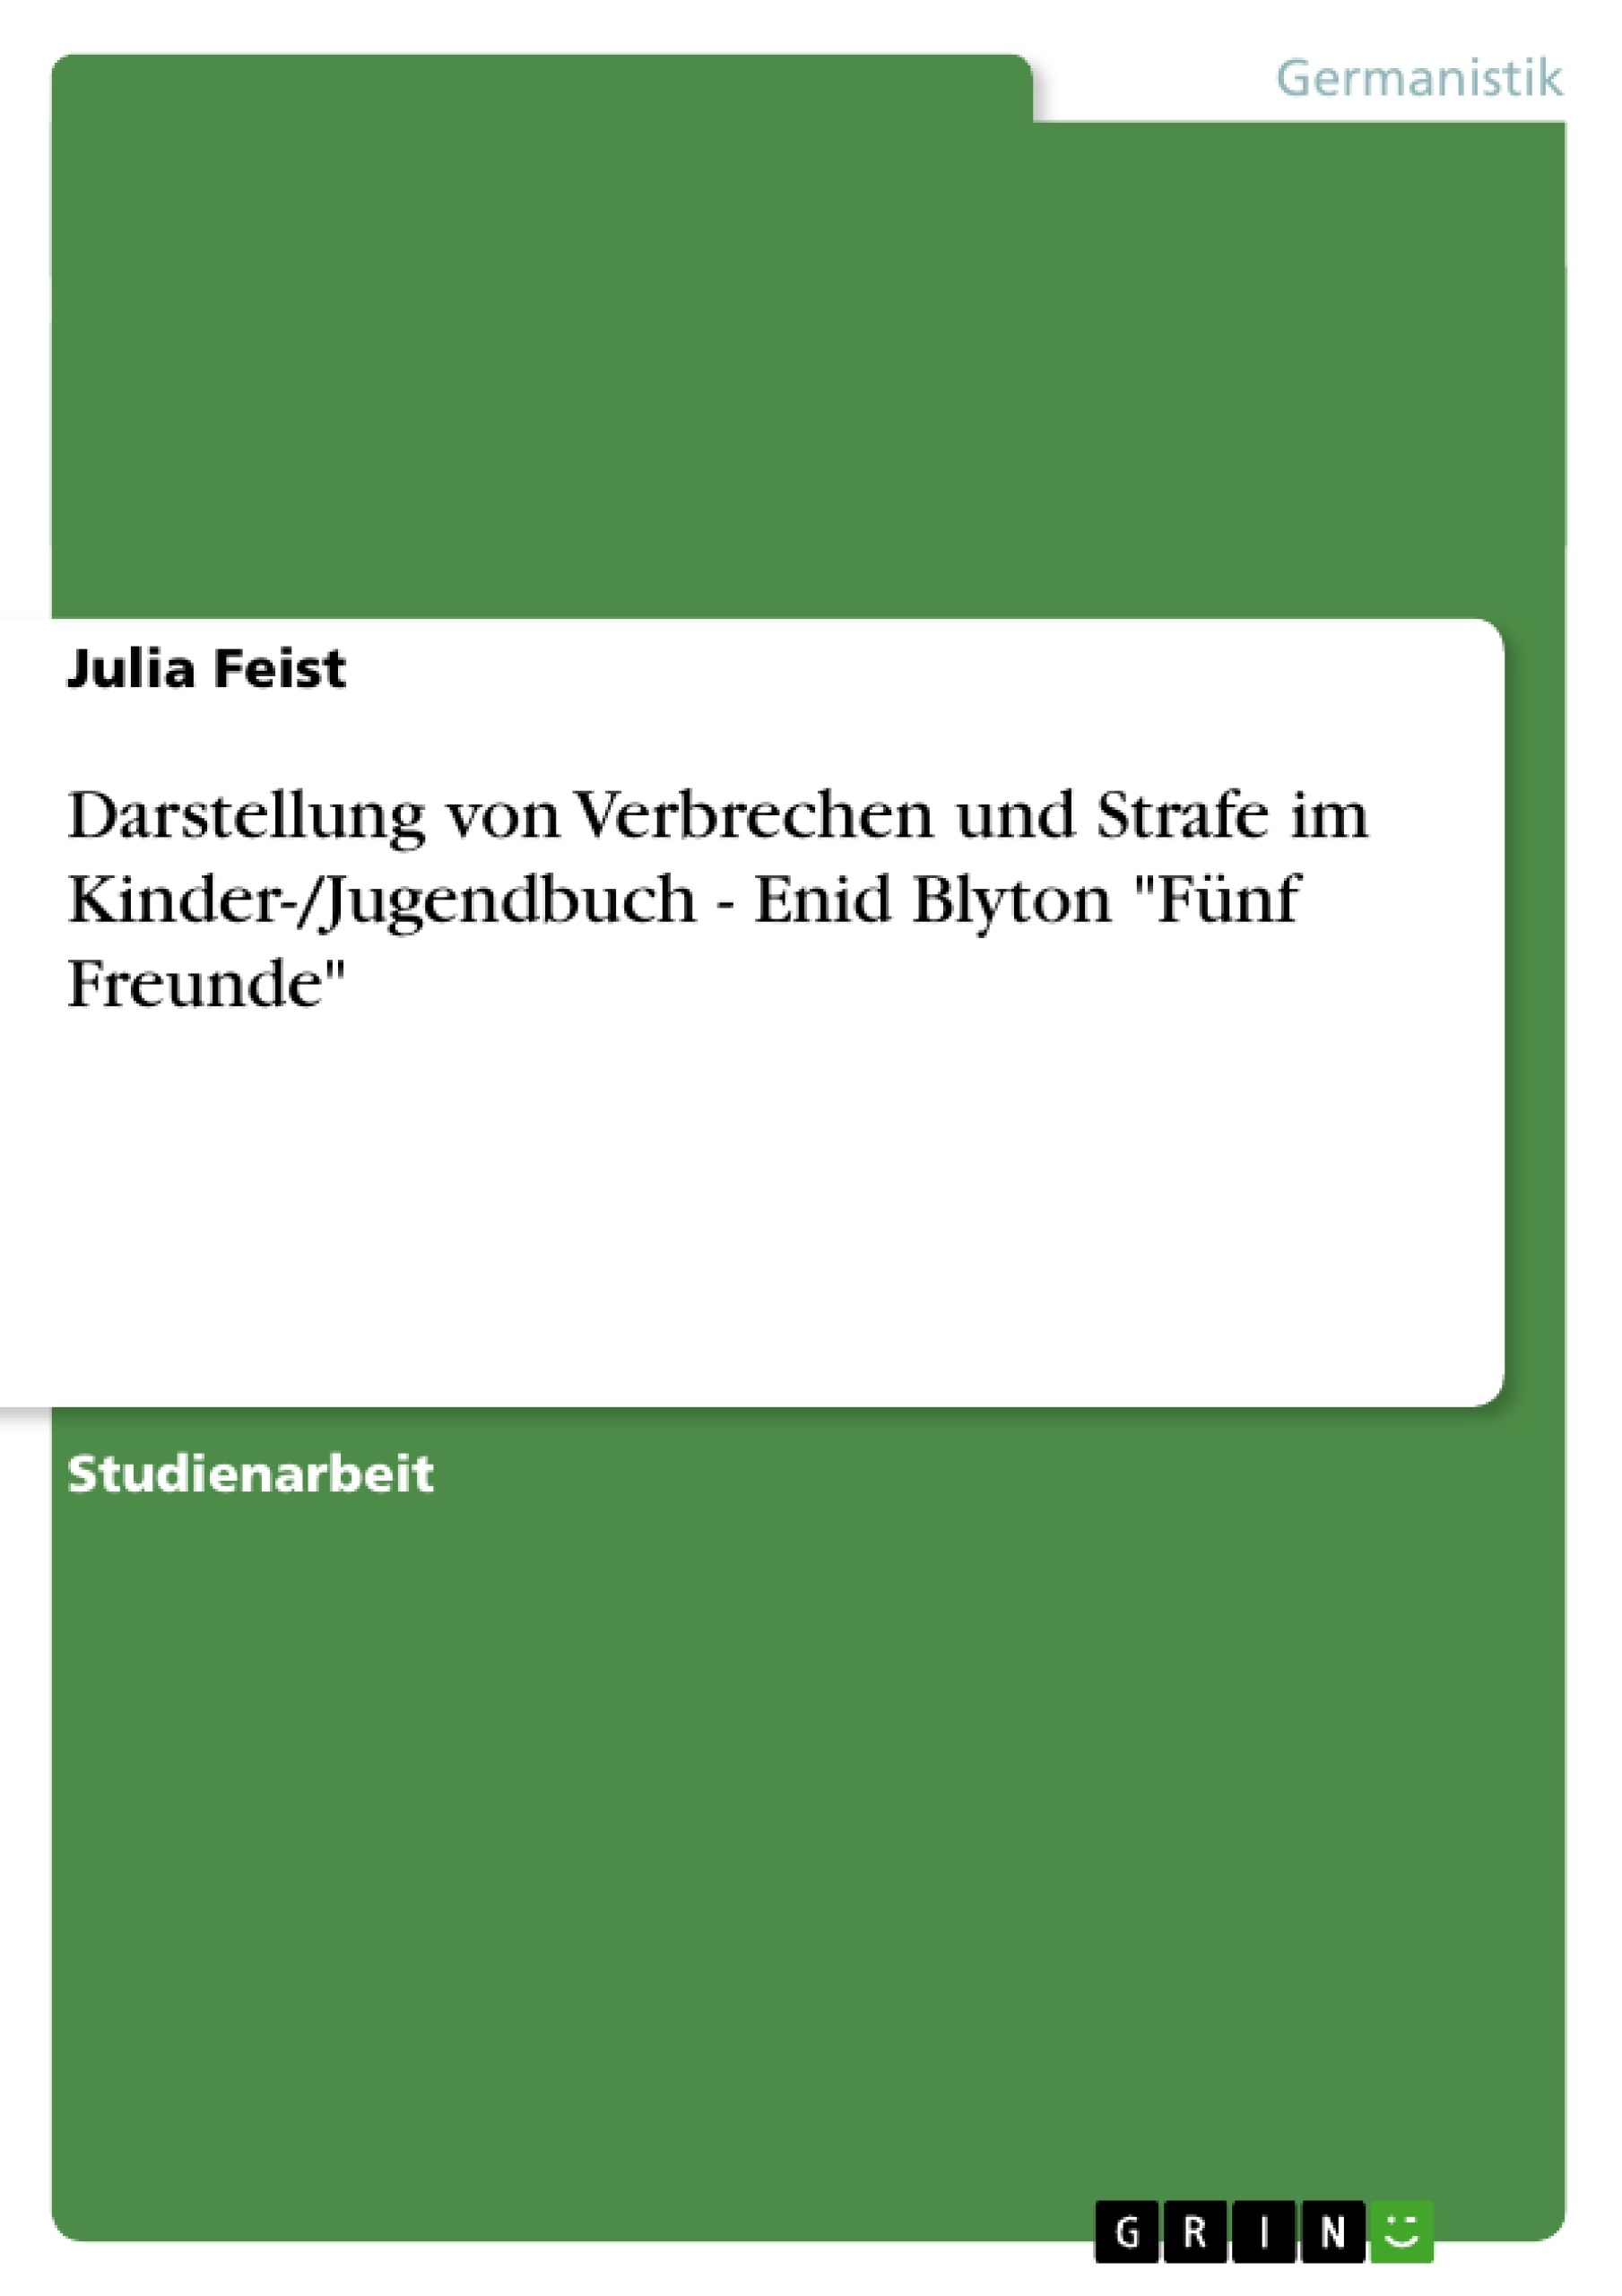 Title: Darstellung von Verbrechen und Strafe im Kinder-/Jugendbuch - Enid Blyton "Fünf Freunde"